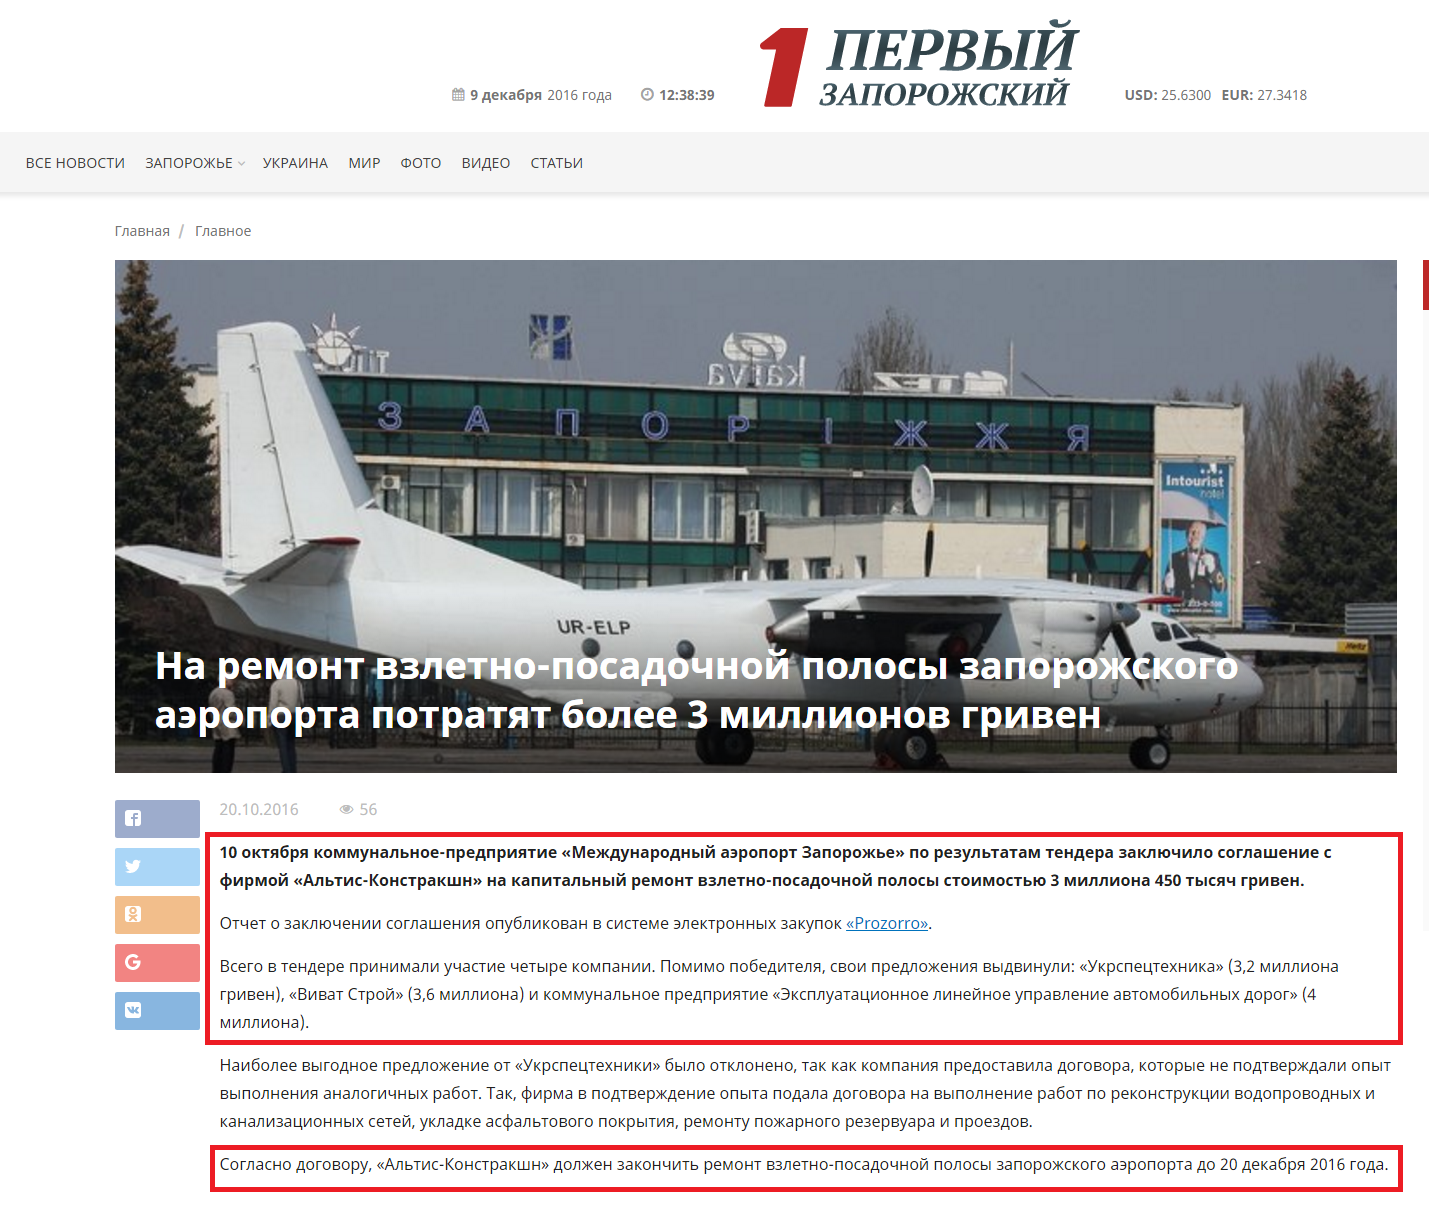 http://1news.zp.ua/na-remont-vzletno-posadochnoy-polosyi-zaporozhskogo-aeroporta-potratyat-bolee-3-millionov-griven/